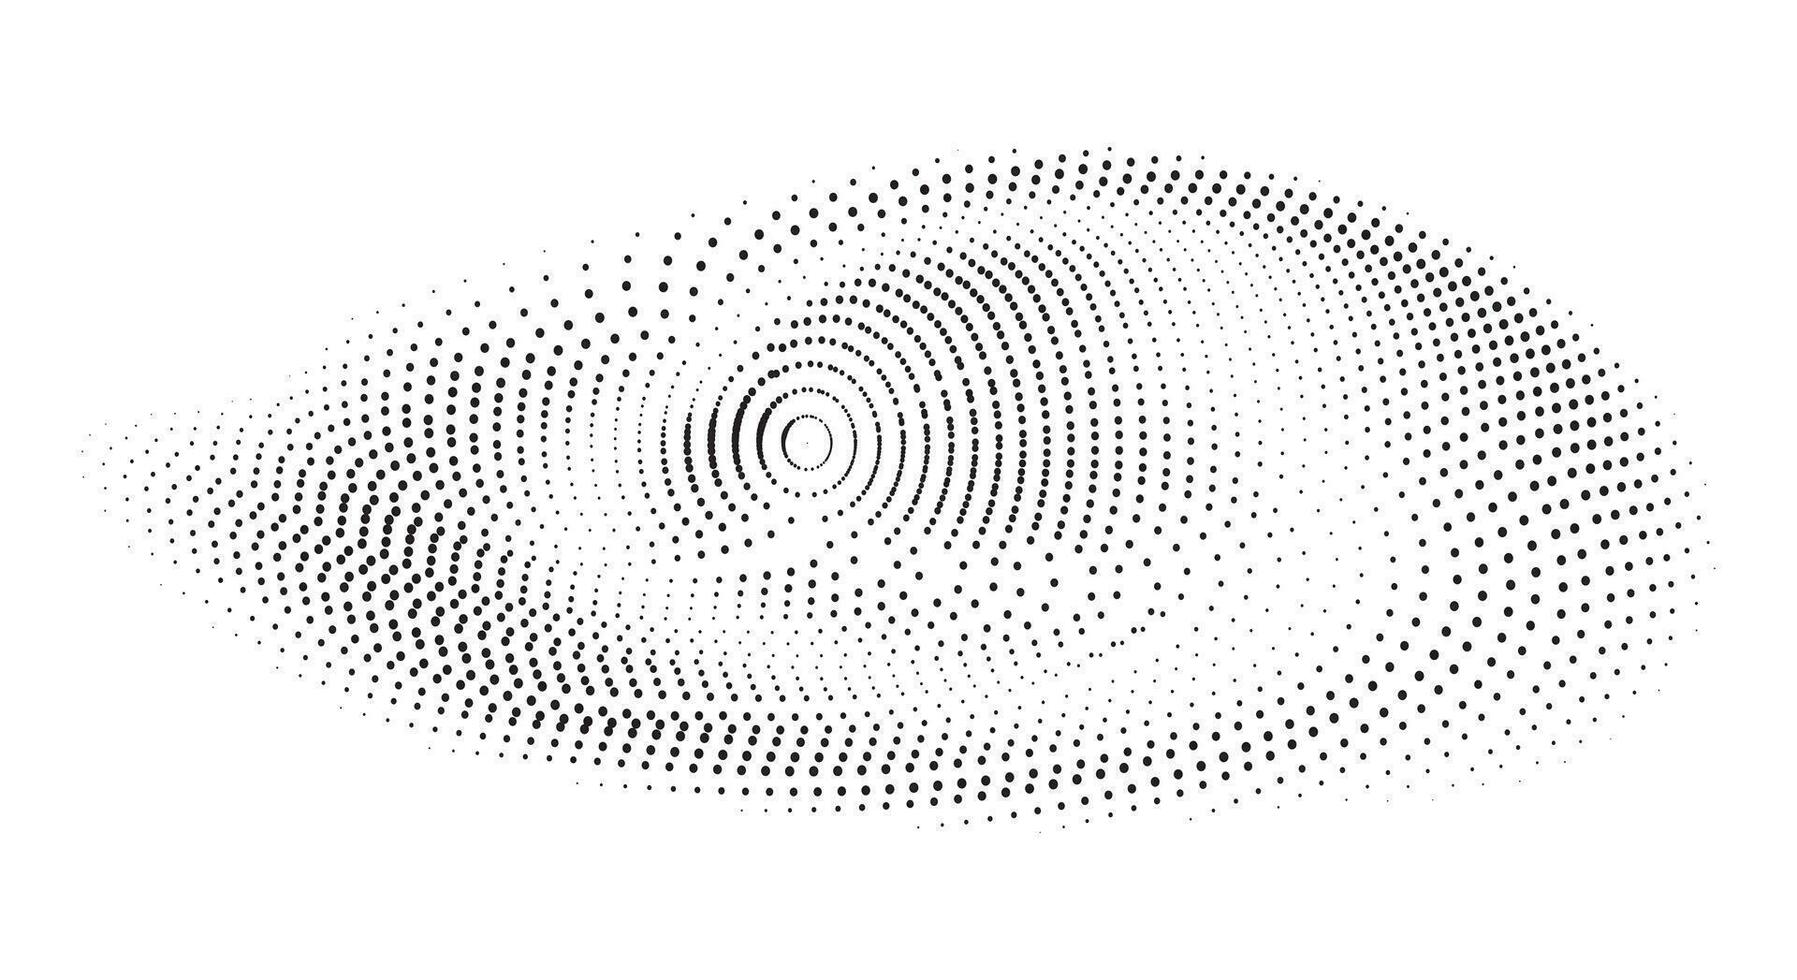 un negro y blanco imagen de un punto patrón, trama de semitonos vectore ilustración trama de semitonos modelo trama de semitonos puntos malla trama de semitonos pantalla toro radial, un punto modelo en un blanco fondo, vector